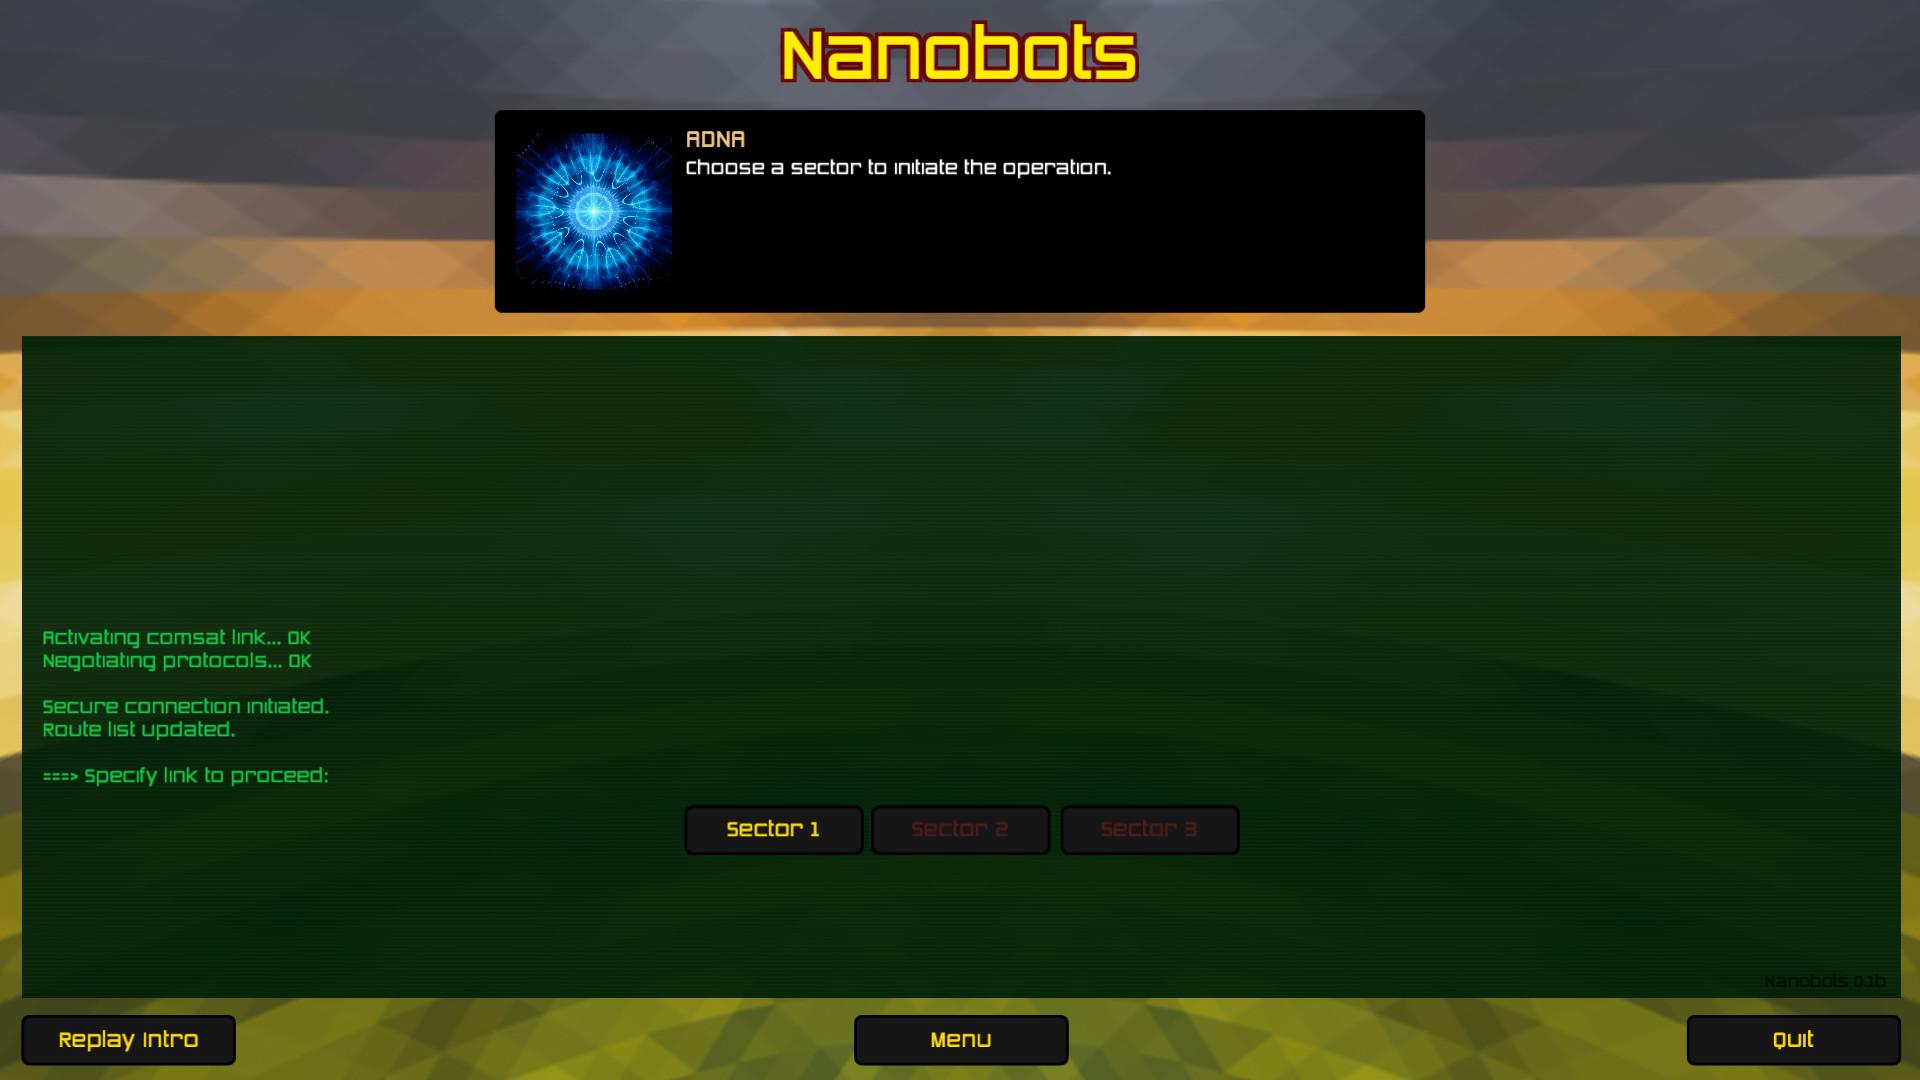 Screenshot №5 from game Nanobots